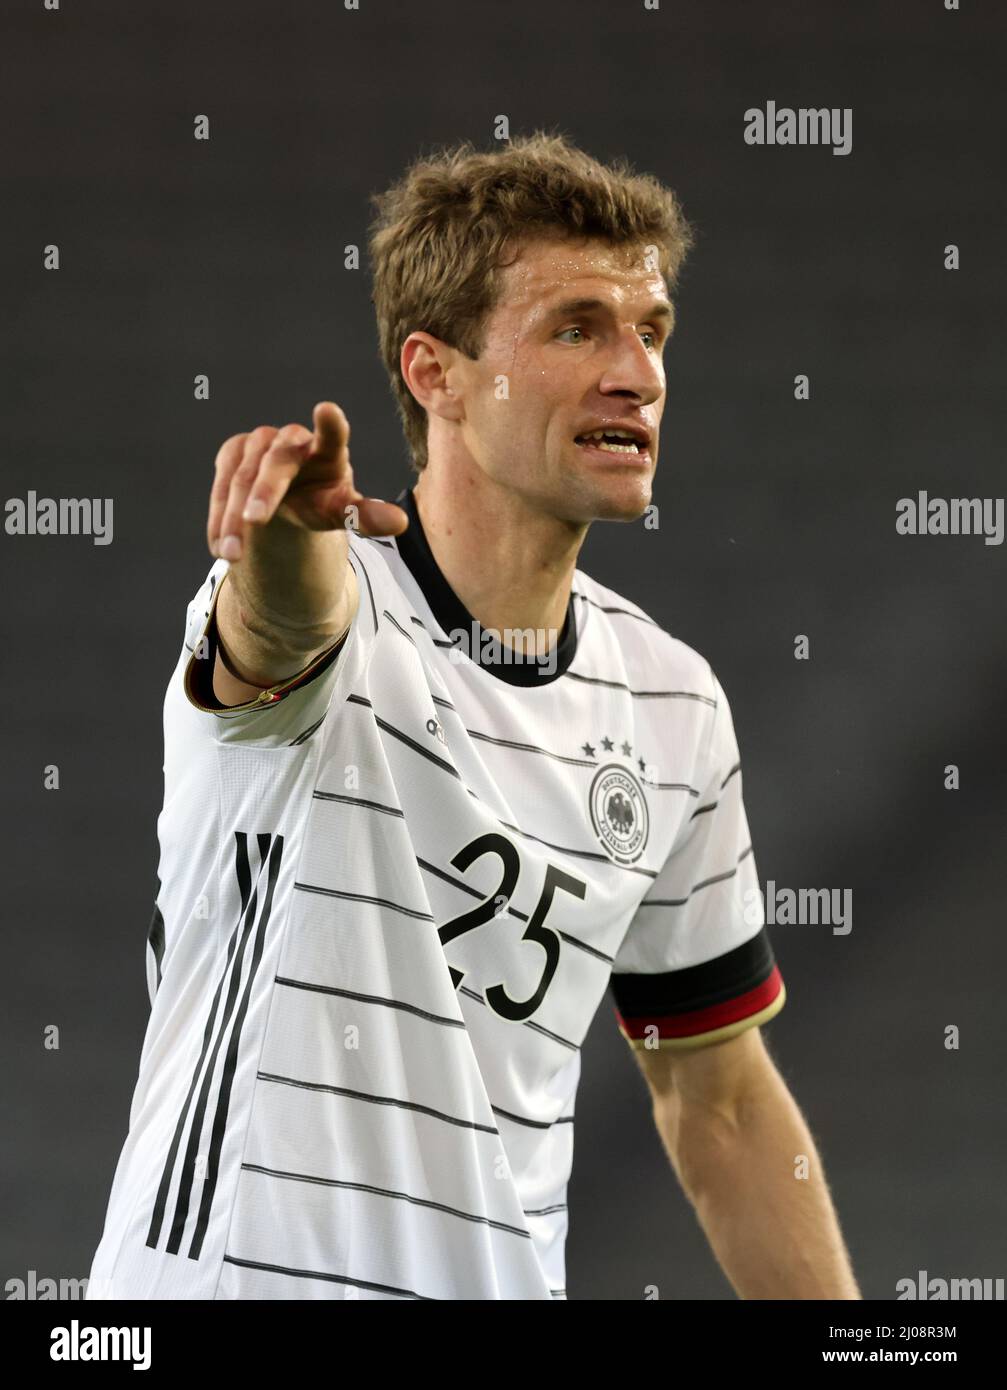 Thomas MŸller Fussball LŠnderspiel Deutschland - DŠnemark © diebilderwelt / Alamy stock Banque D'Images